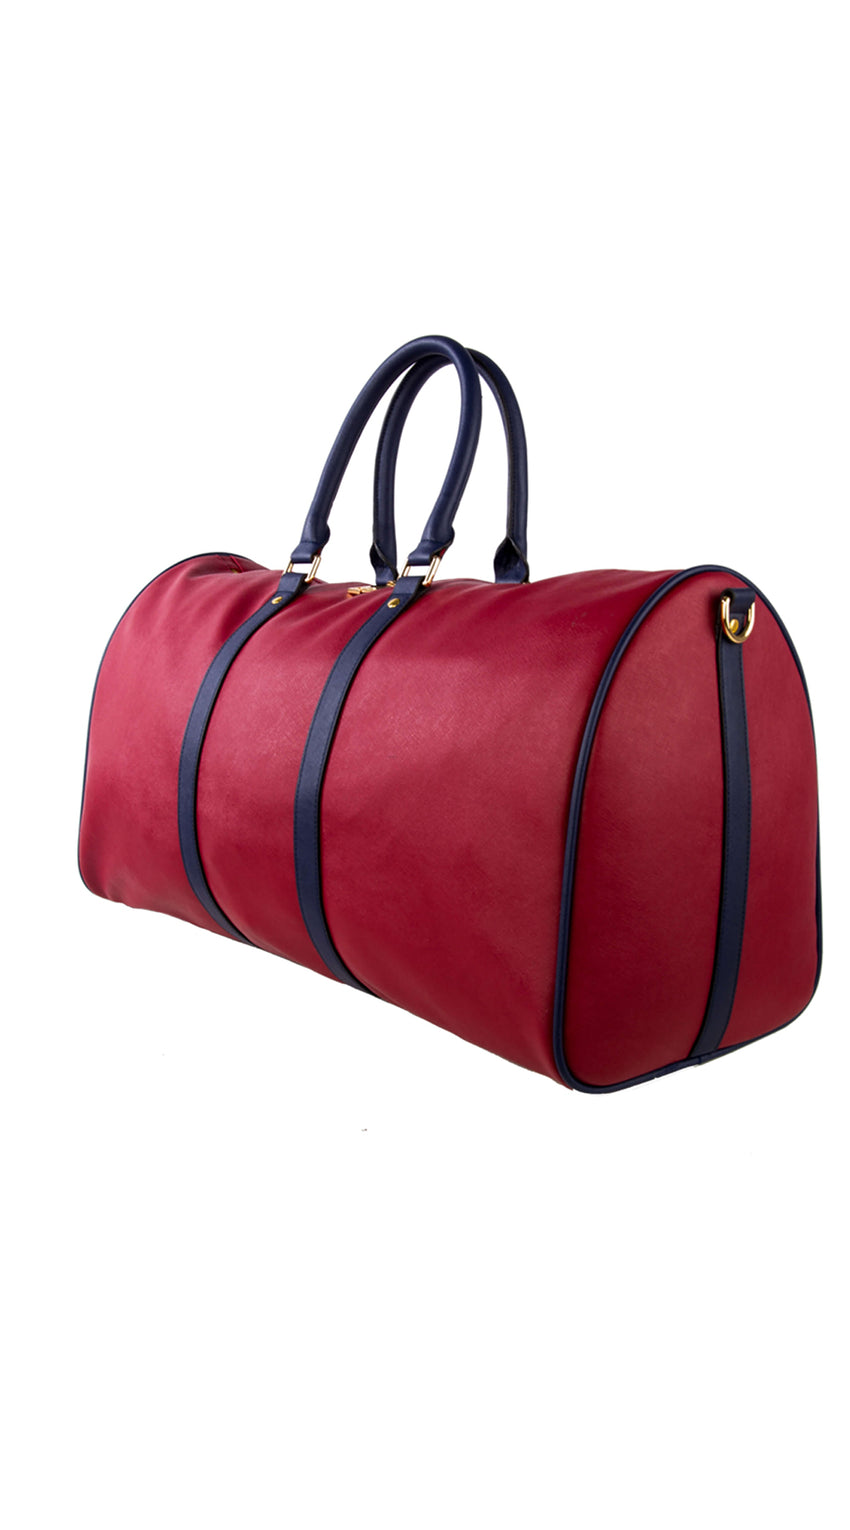 SOJOURNE LUGGAGE | Weekender Duffle Bag - Burgundy Red / Navy